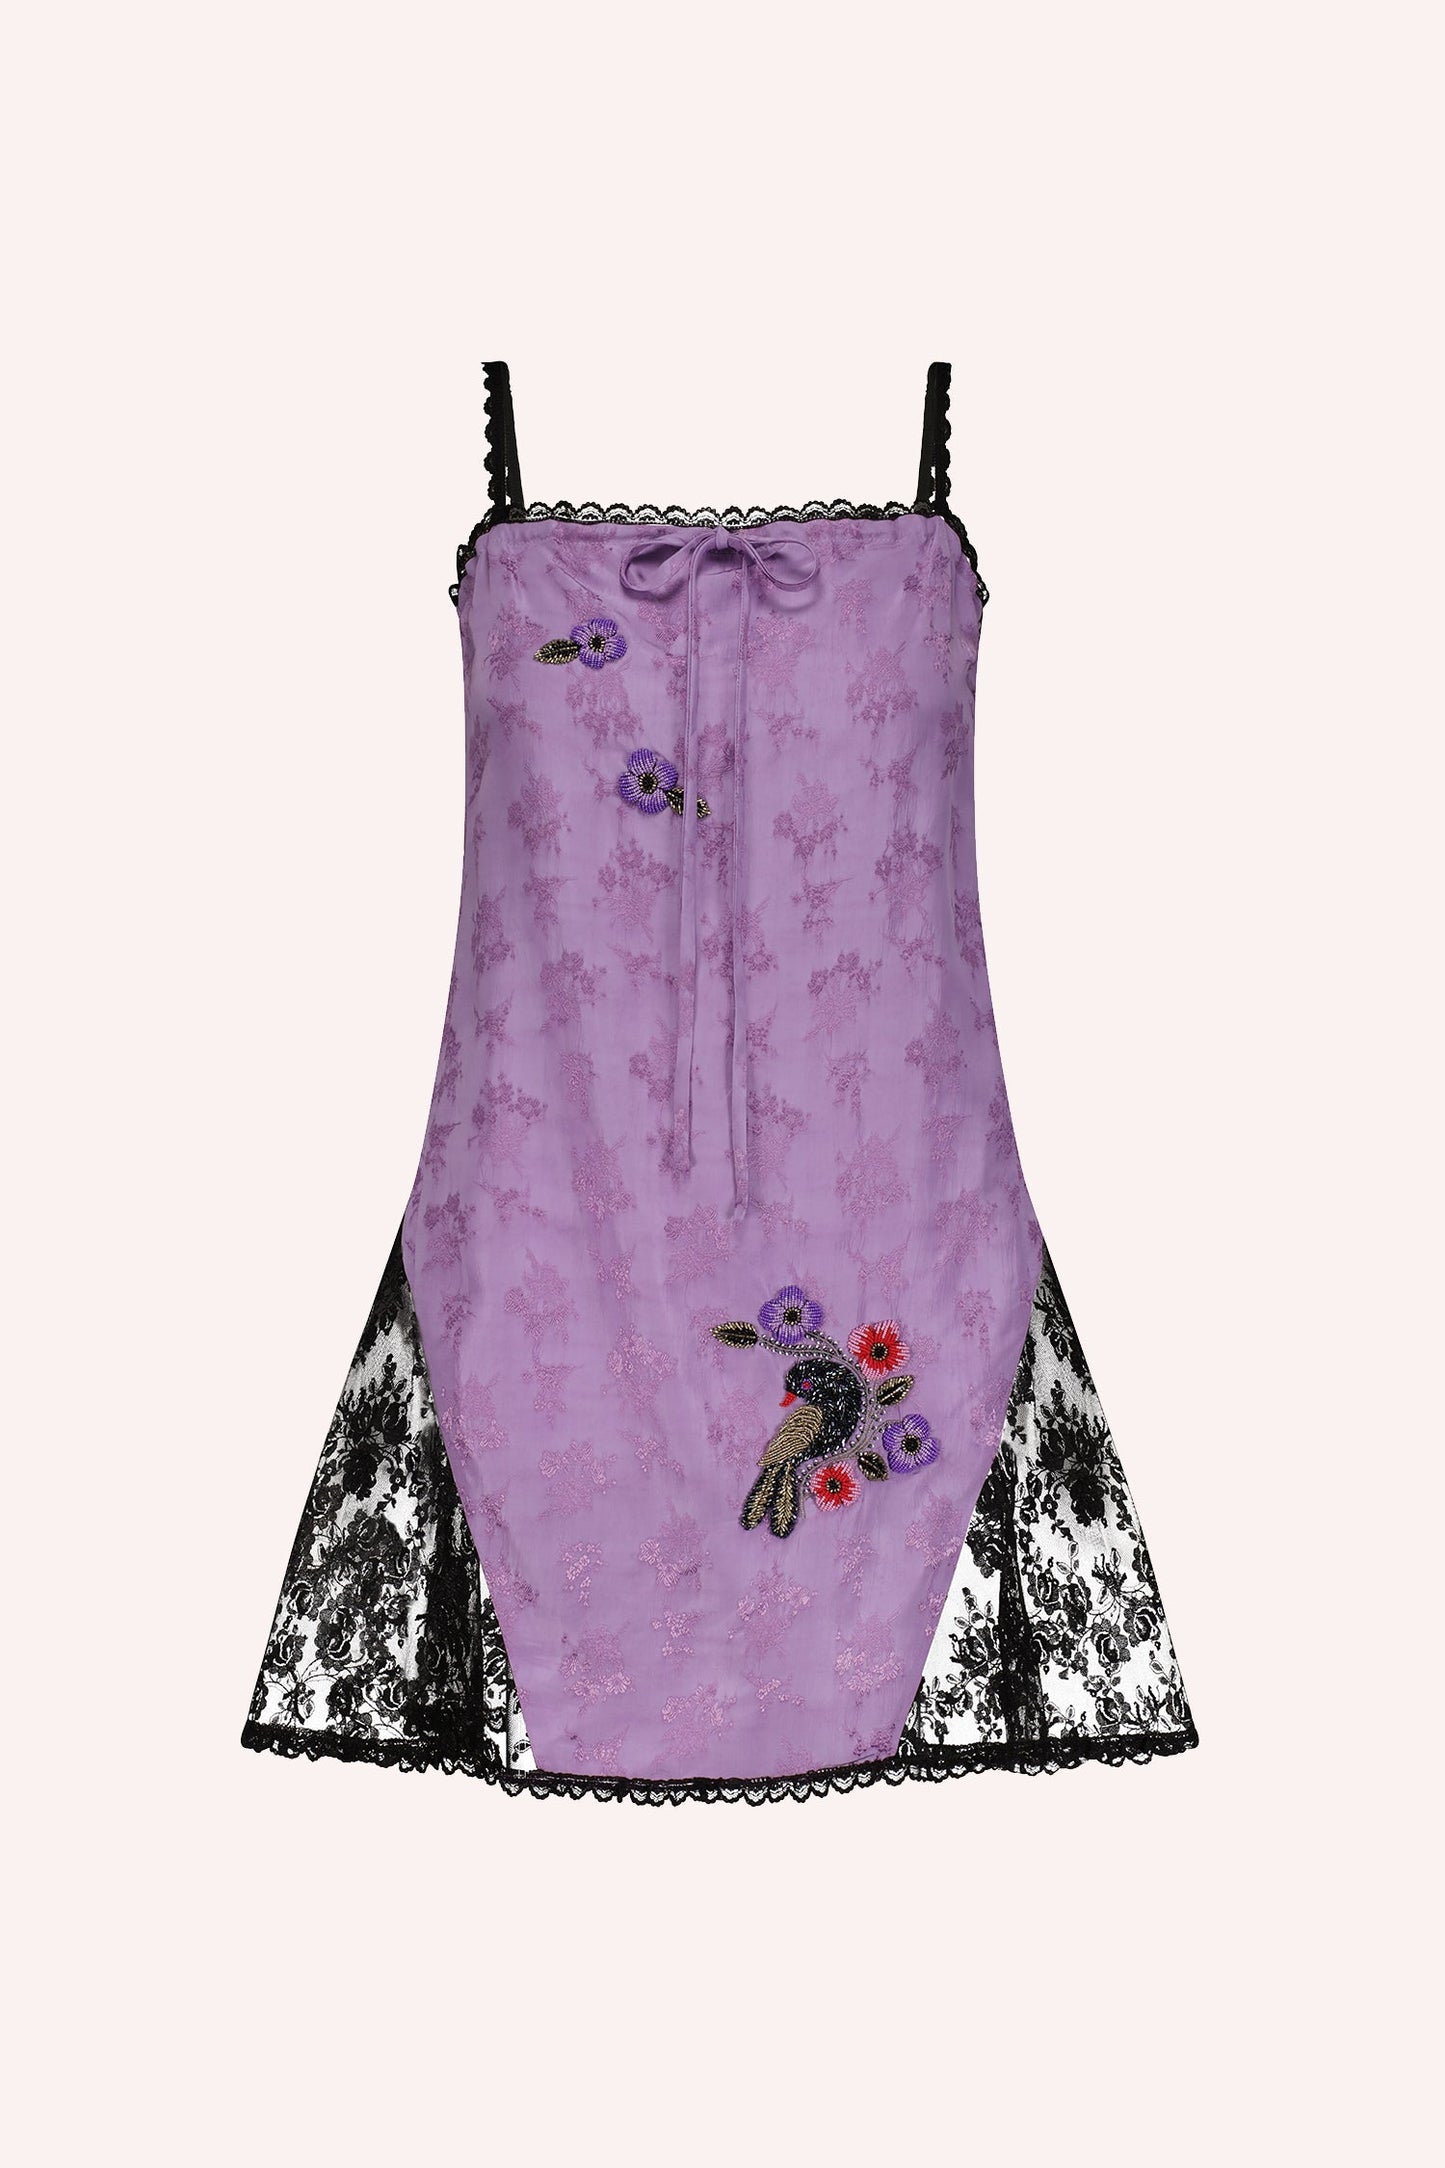 Floral Jacquard Slip Dress Lavender, Black lace on white on sides, dark lavender floral pattern